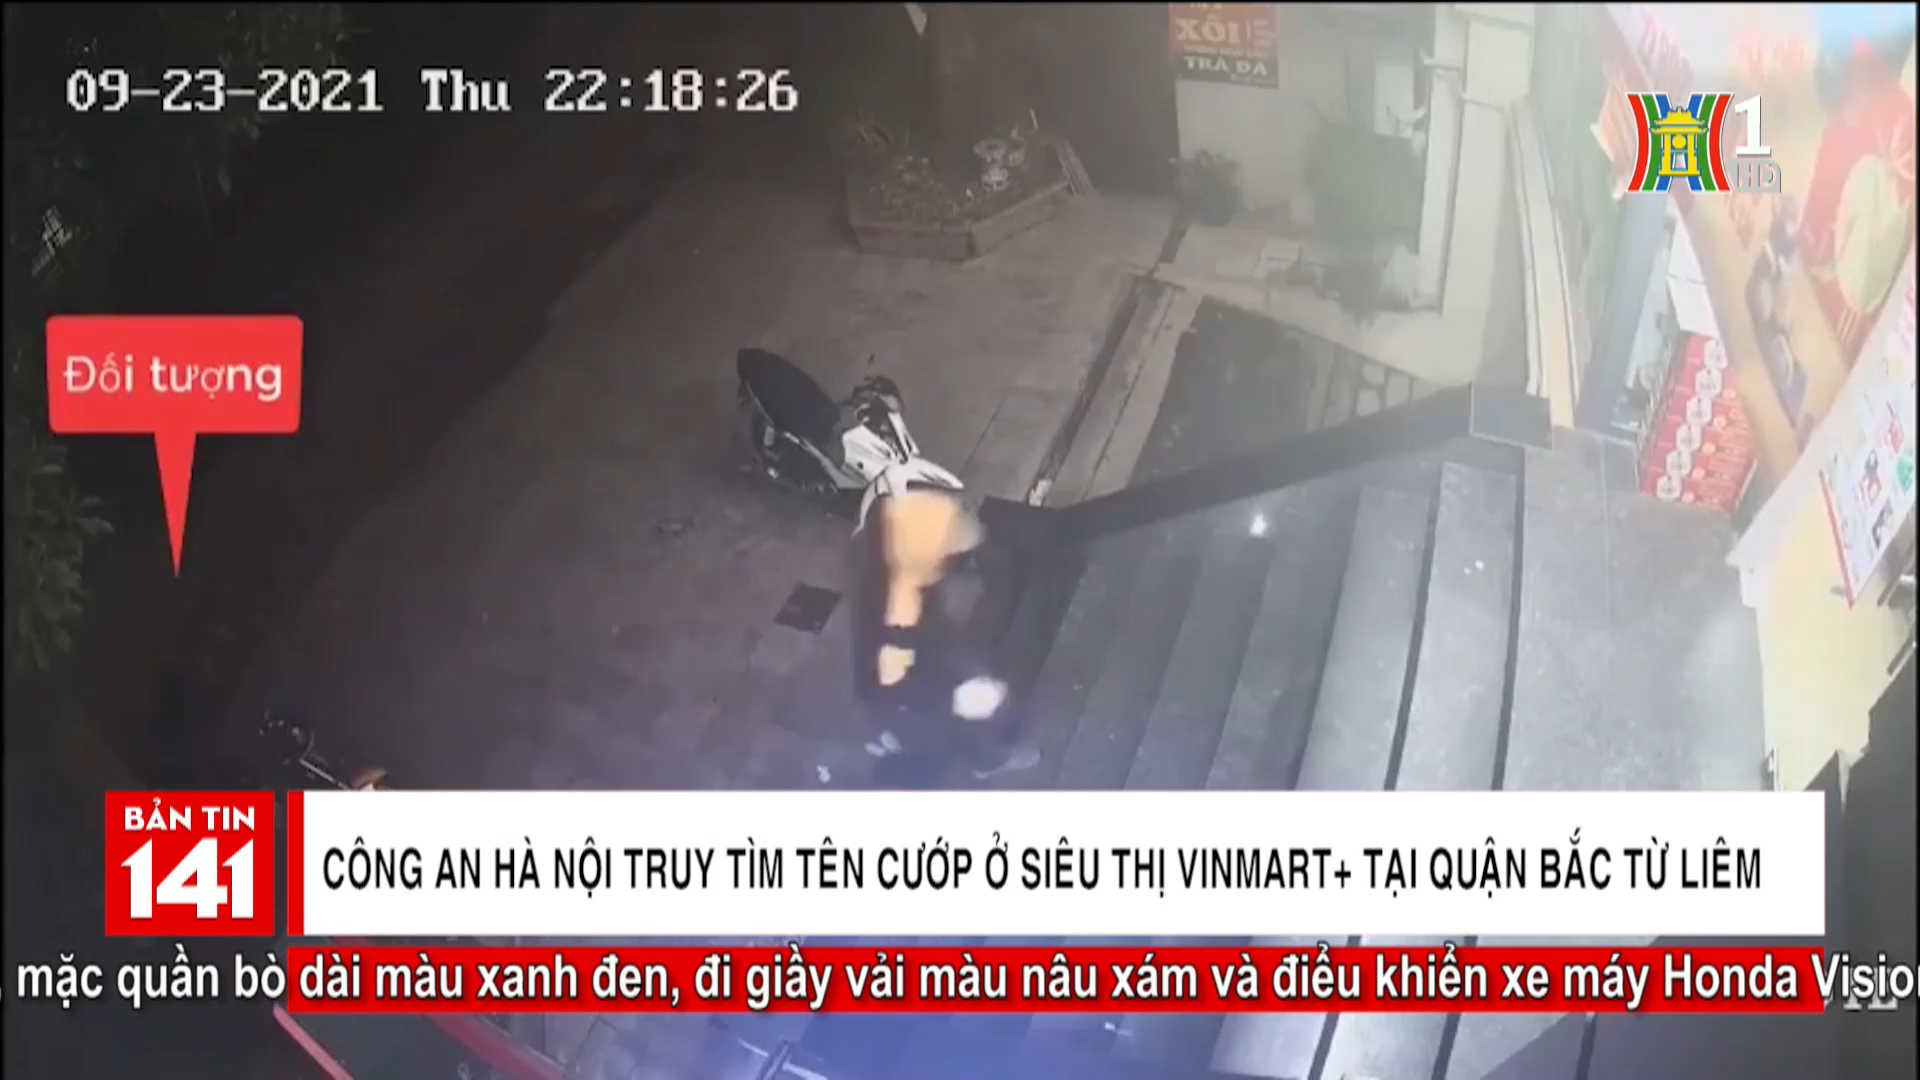 Công an thành phố Hà Nội truy tìm tên cướp tại siêu thị Vinmart quận Bắc Từ Liêm